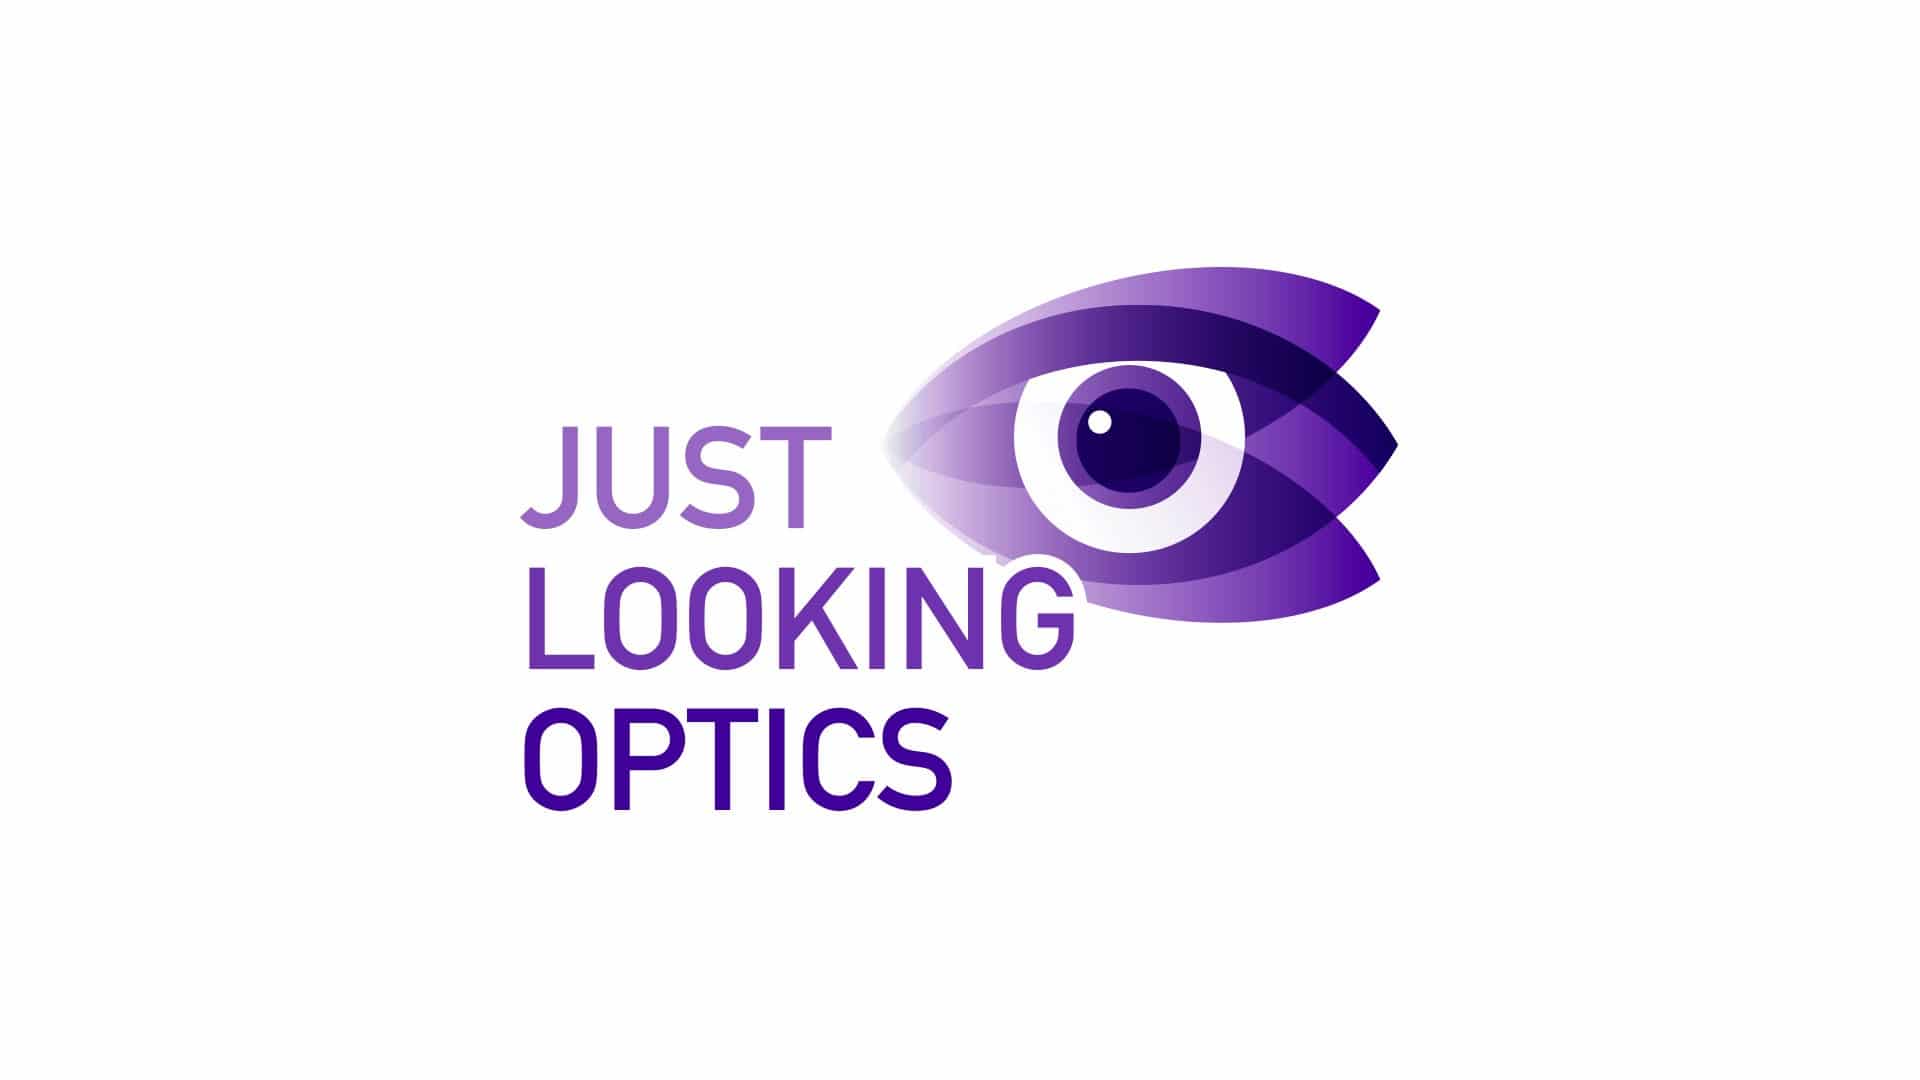 Just Looking Optics Γραφίστας Σπύρος Ηλιόπουλος